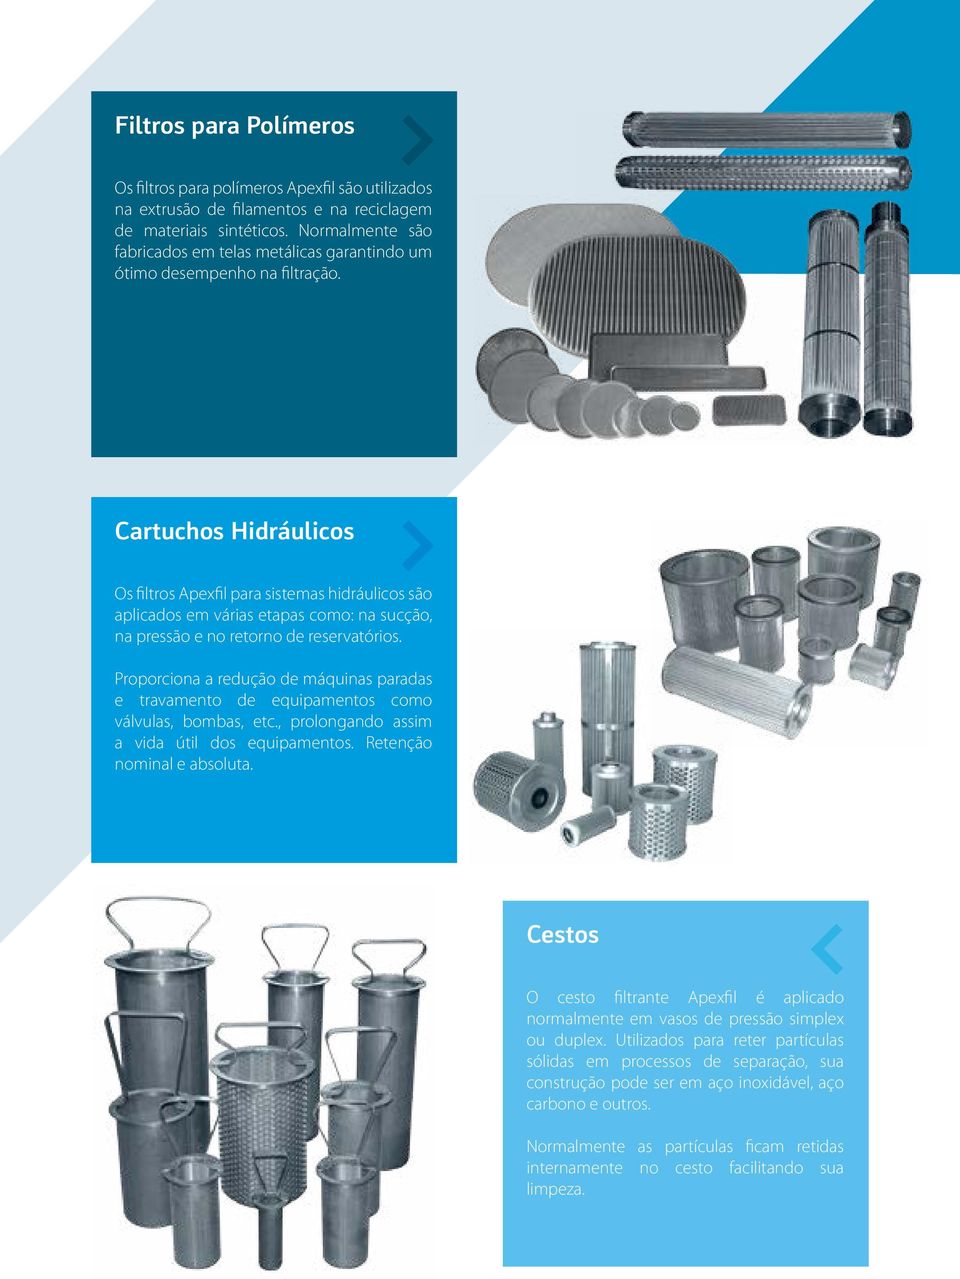 Cartuchos Hidráulicos Os filtros Apexfil para sistemas hidráulicos são aplicados em várias etapas como: na sucção, na pressão e no retorno de reservatórios.